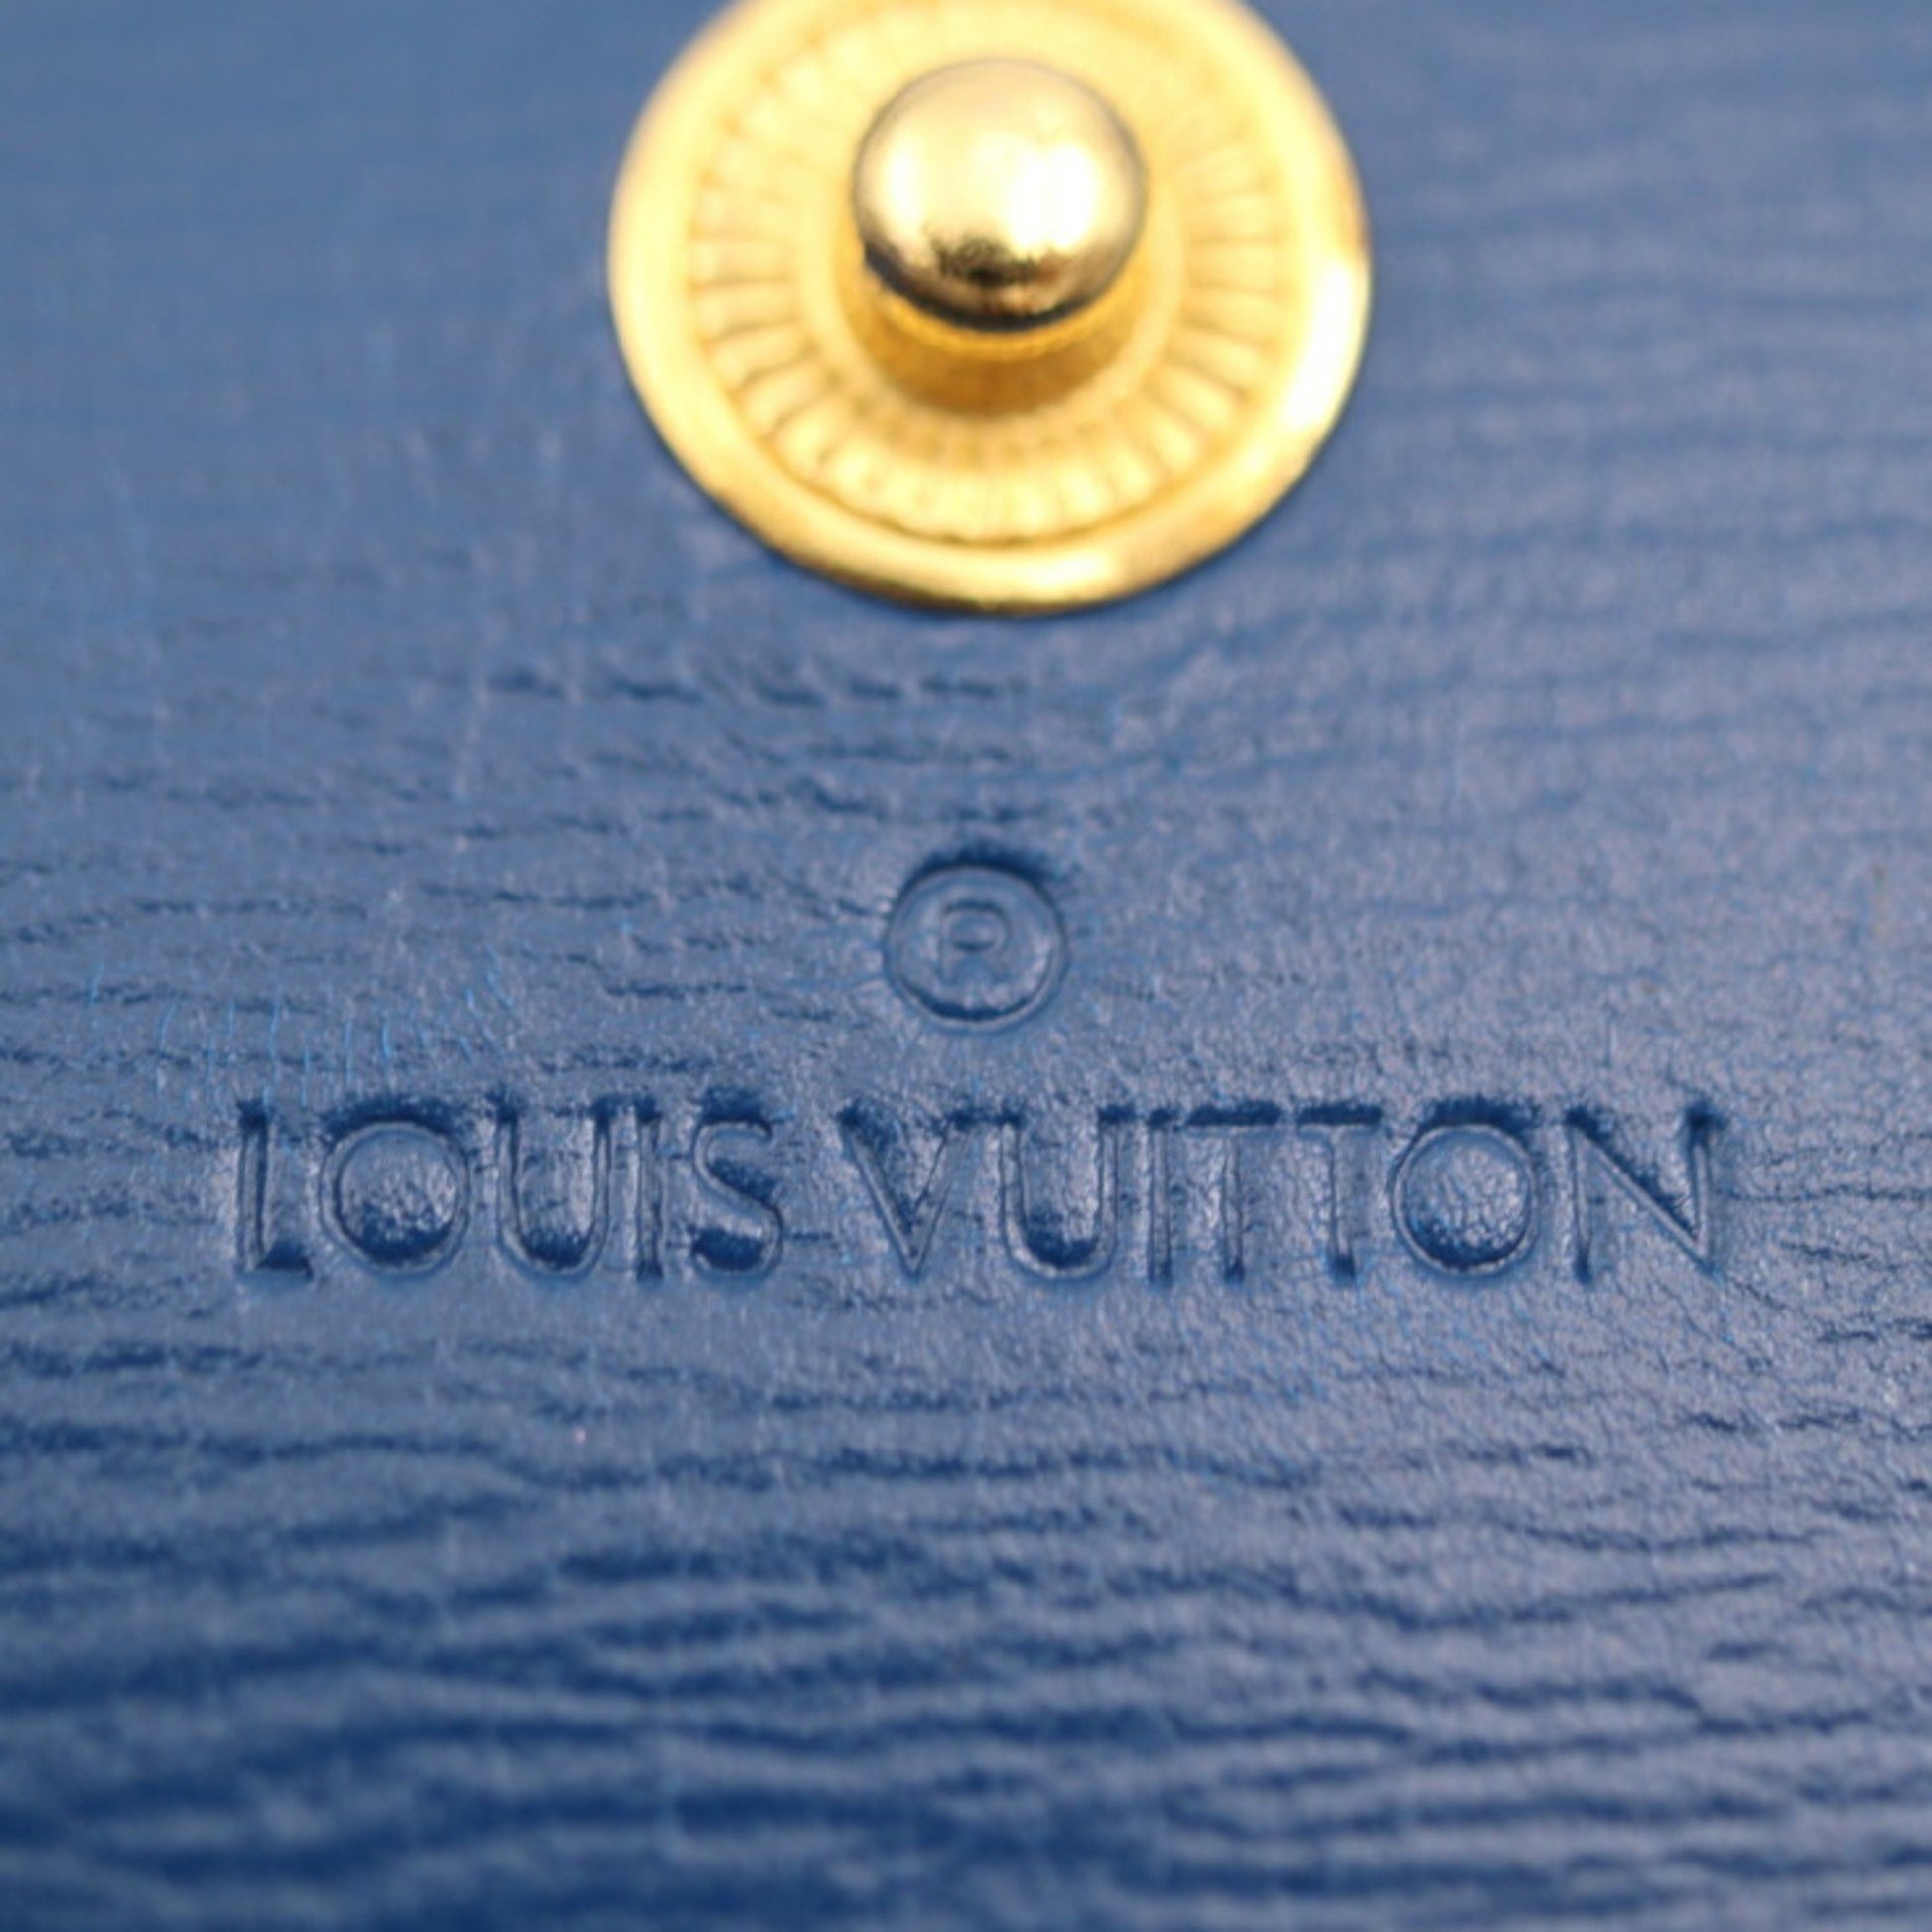 Louis Vuitton Epi Porto Monet Acordion M6657K Women's Epi Leather